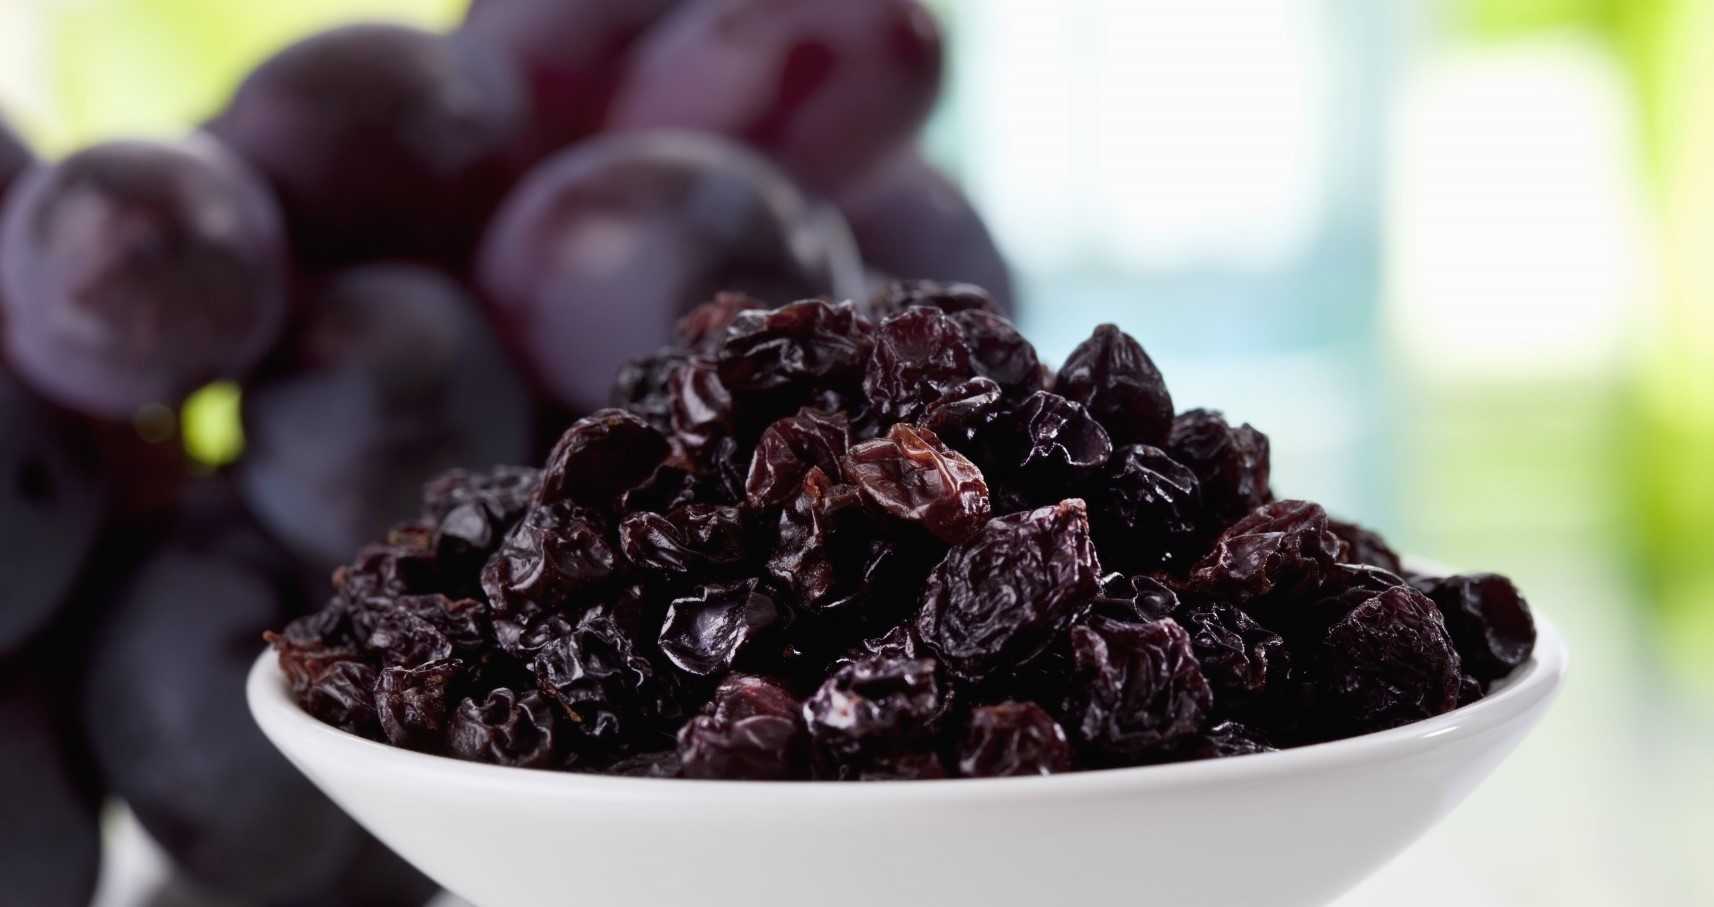 facts about black raisins